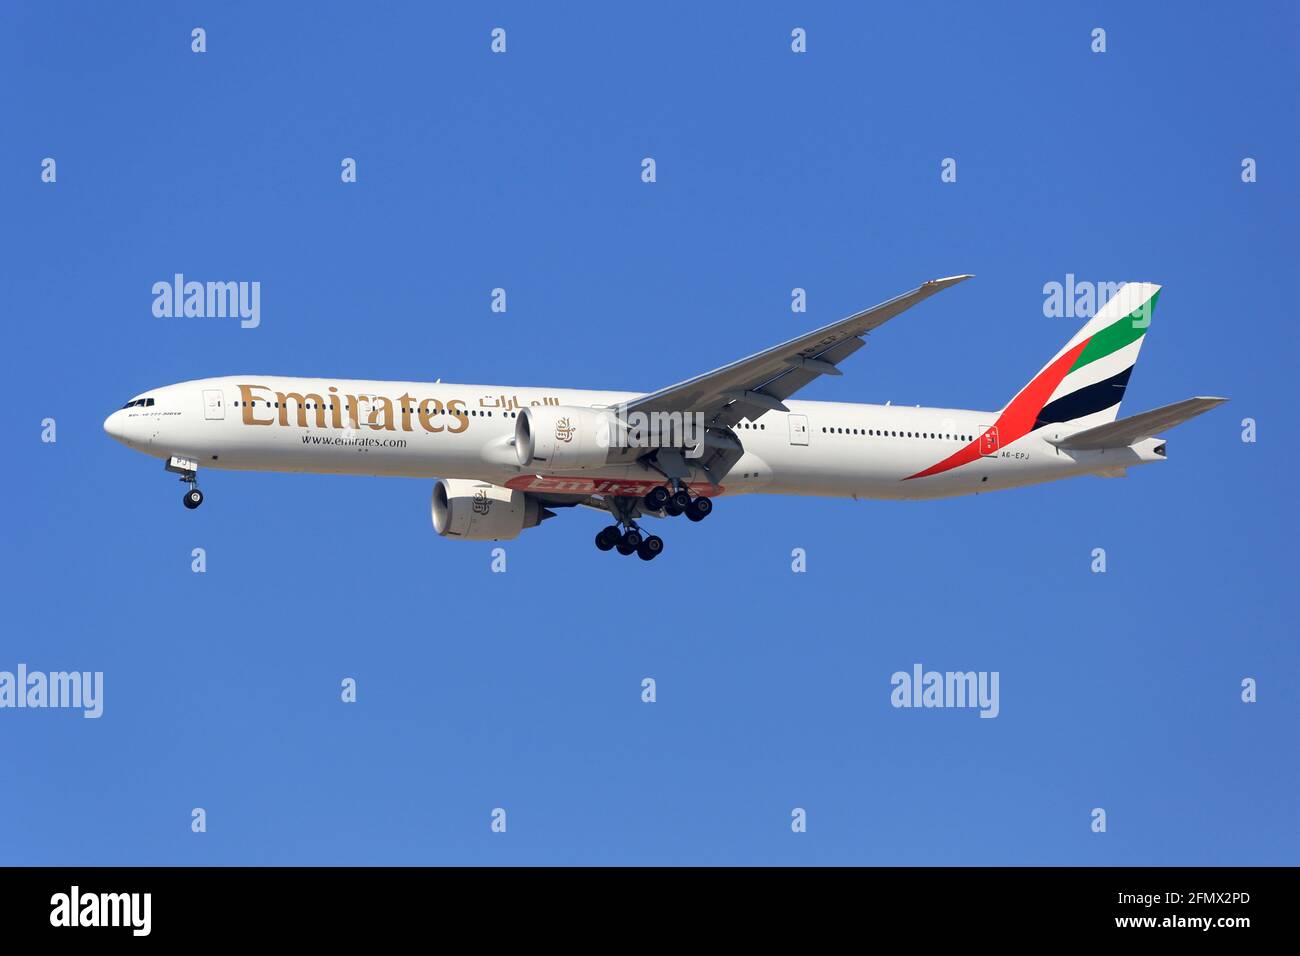 Dubai, Vereinigte Arabische Emirate - 7. März 2017: Emirates Boeing 777-300ER am Flughafen Dubai (DXB) in den Vereinigten Arabischen Emiraten. Stockfoto